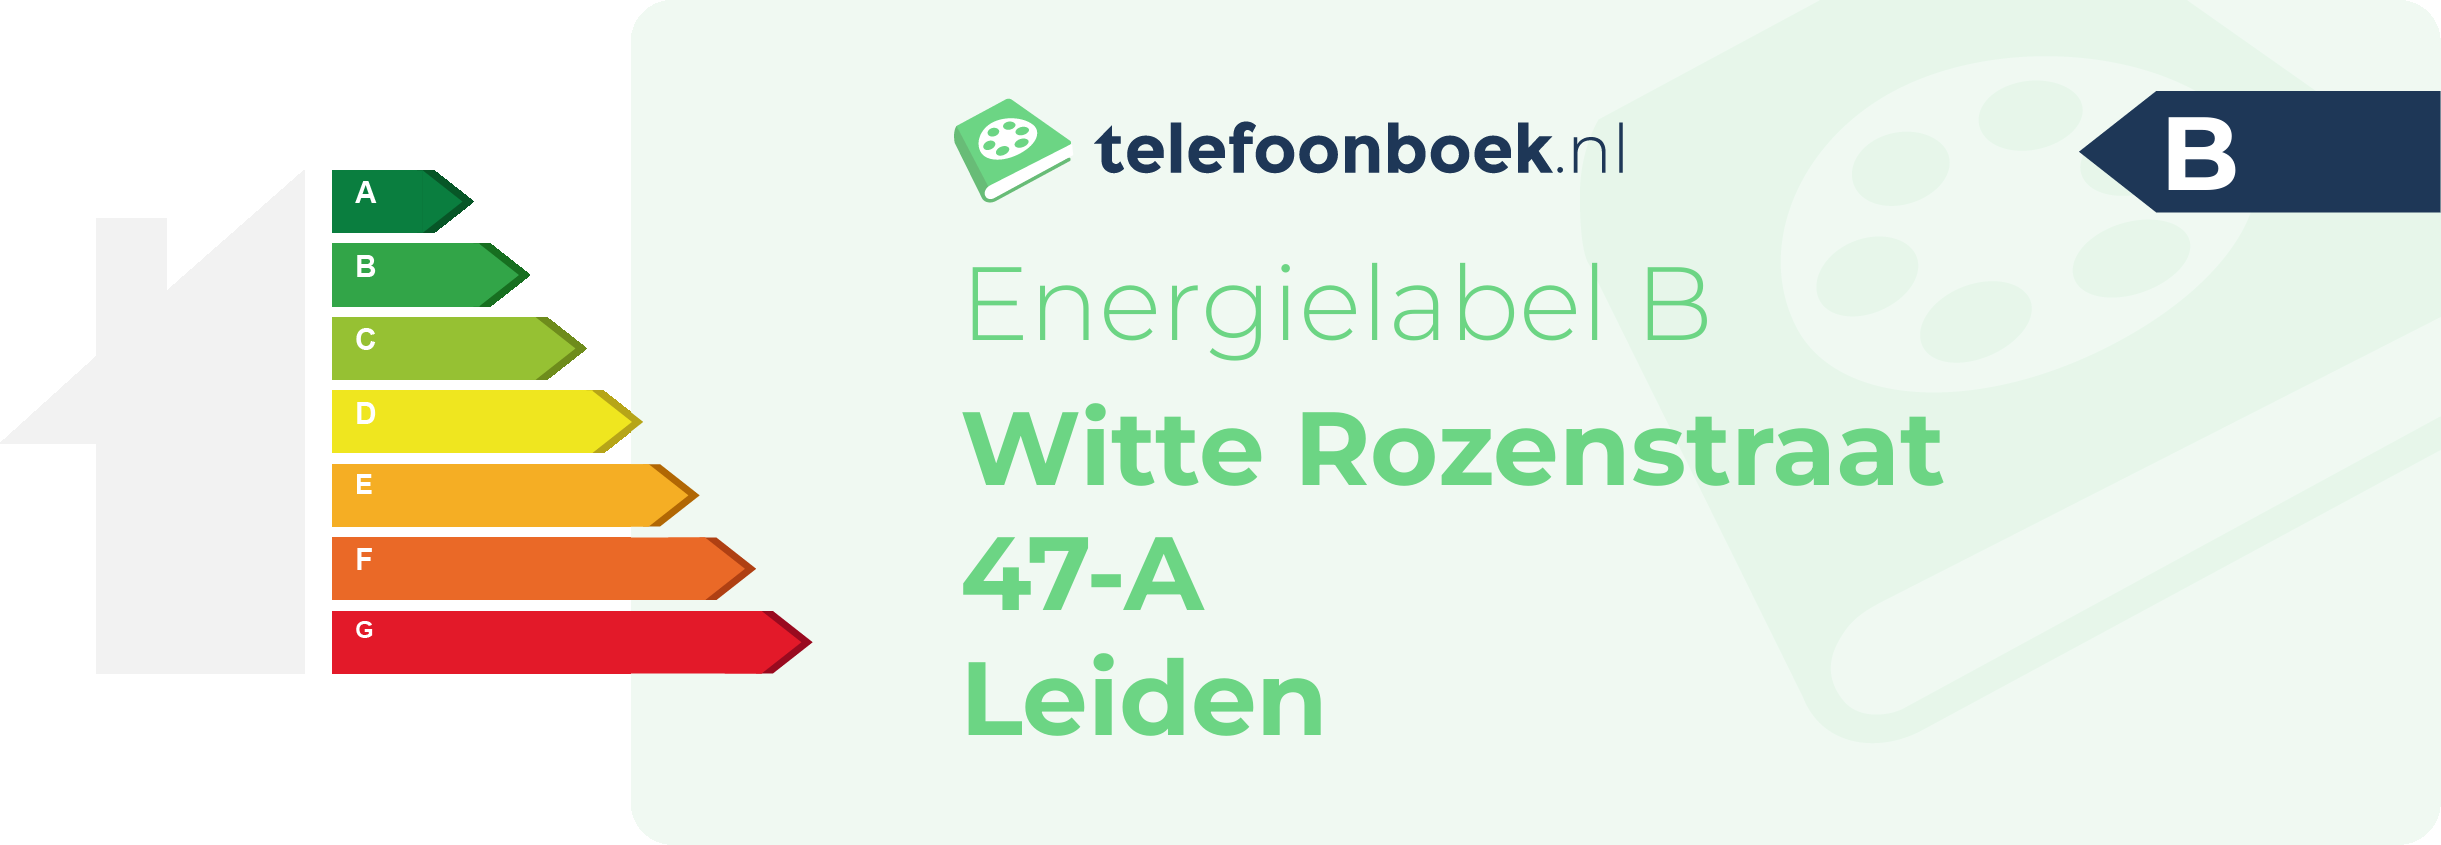 Energielabel Witte Rozenstraat 47-A Leiden